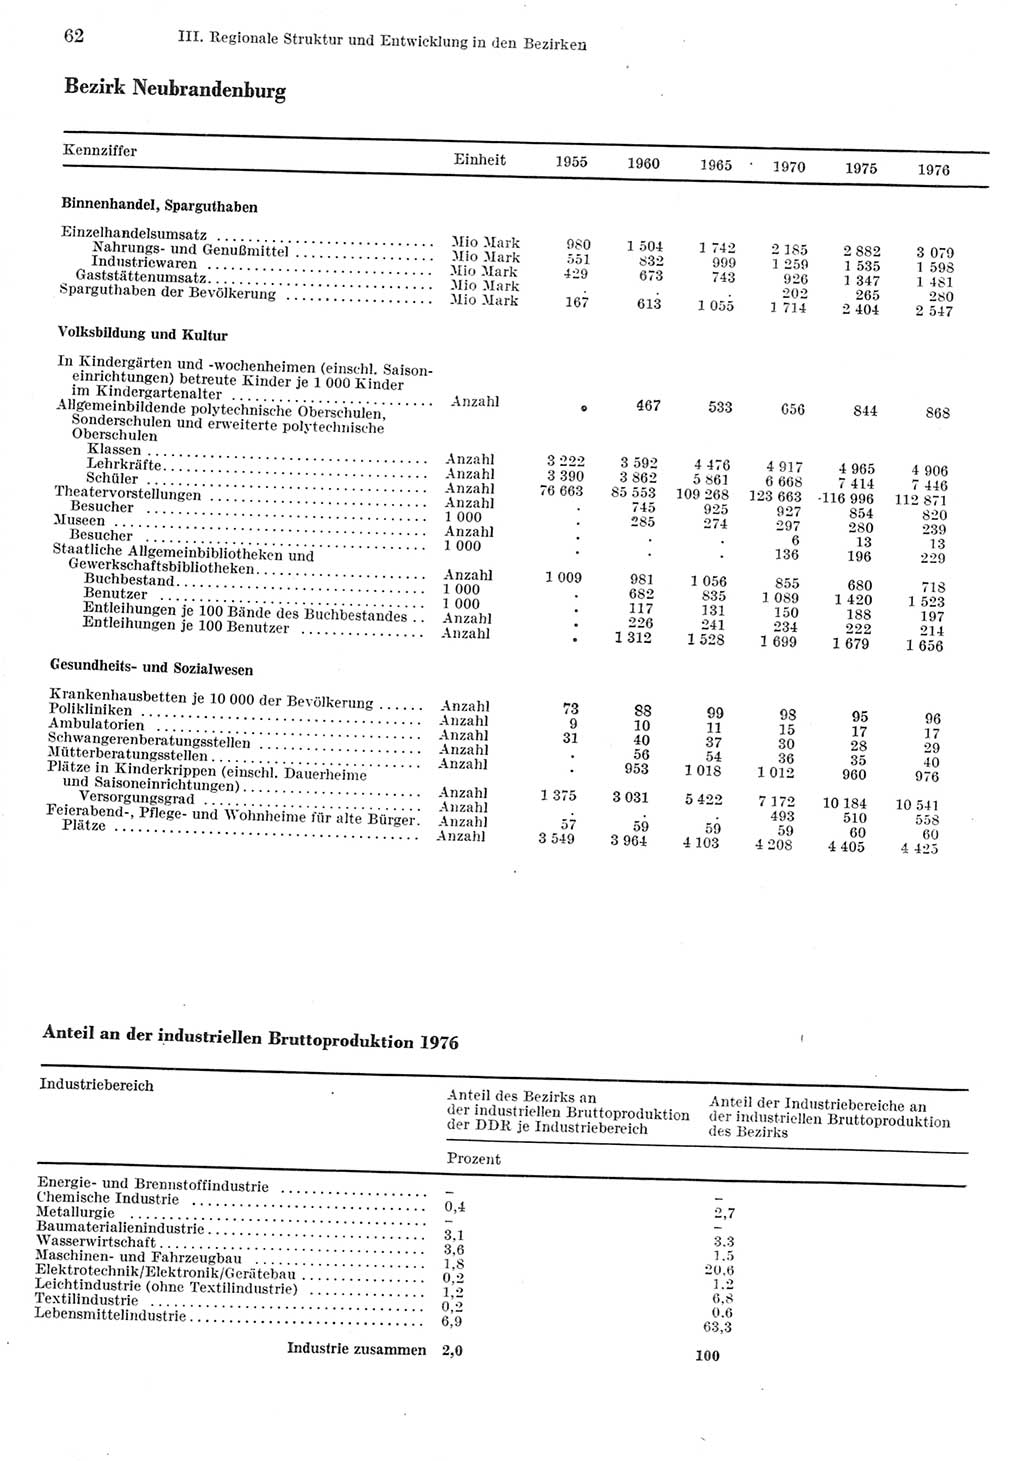 Statistisches Jahrbuch der Deutschen Demokratischen Republik (DDR) 1977, Seite 62 (Stat. Jb. DDR 1977, S. 62)